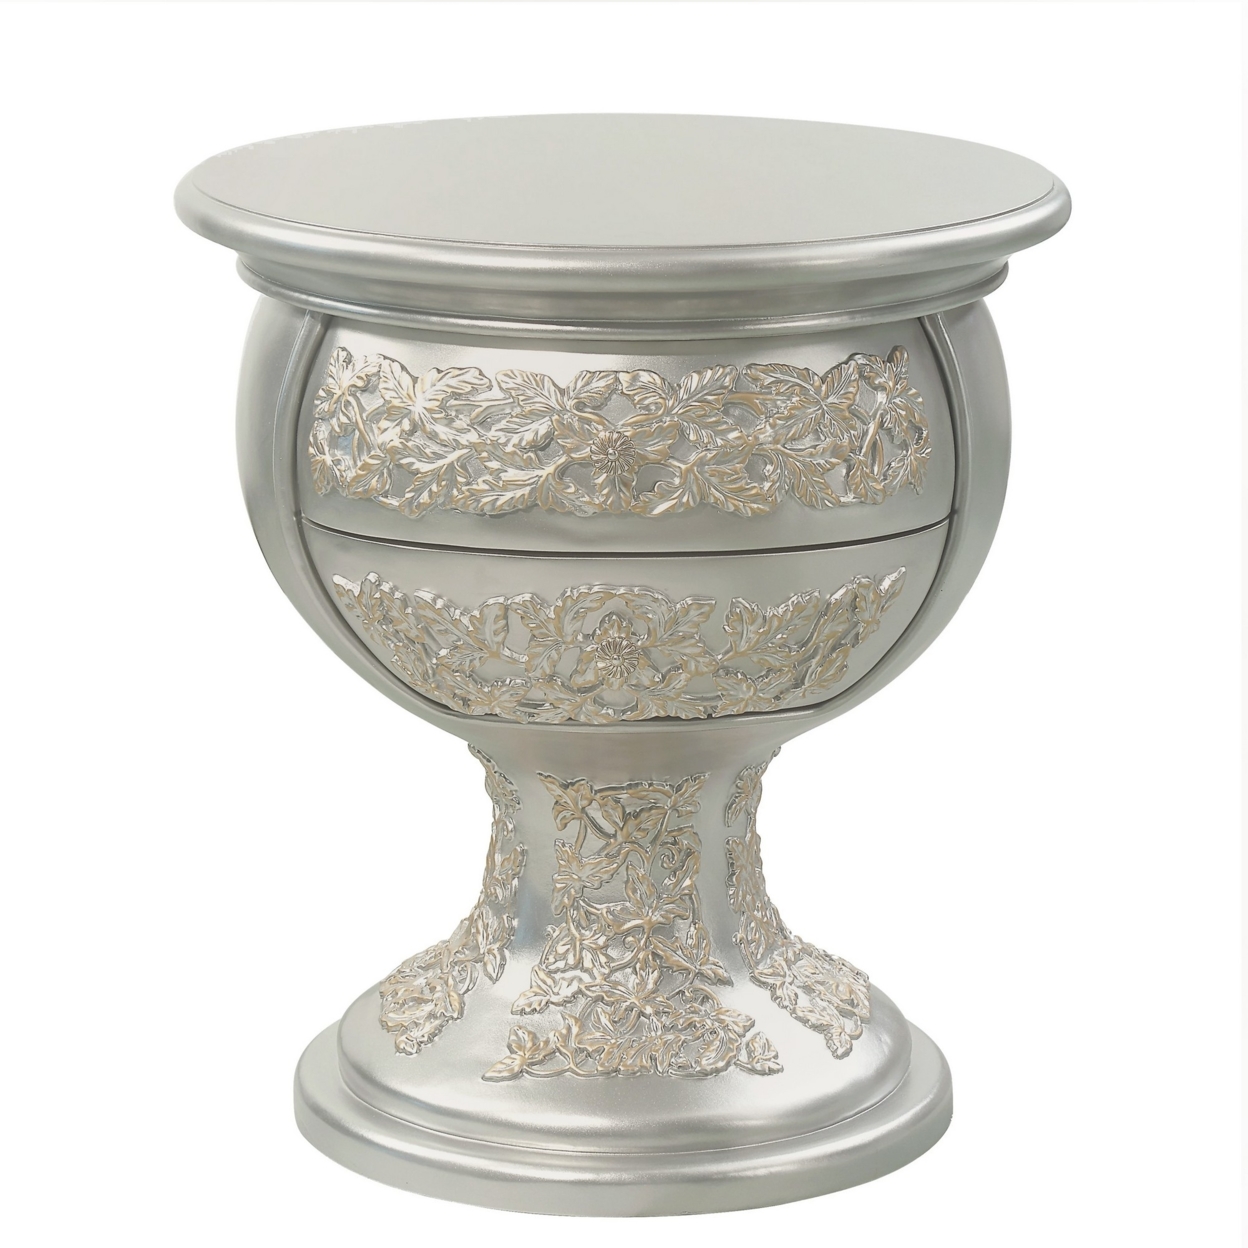 Deneb 30 Inch Luxury Round Nightstand, Gold Floral Motifs, Vintage Silver- Saltoro Sherpi